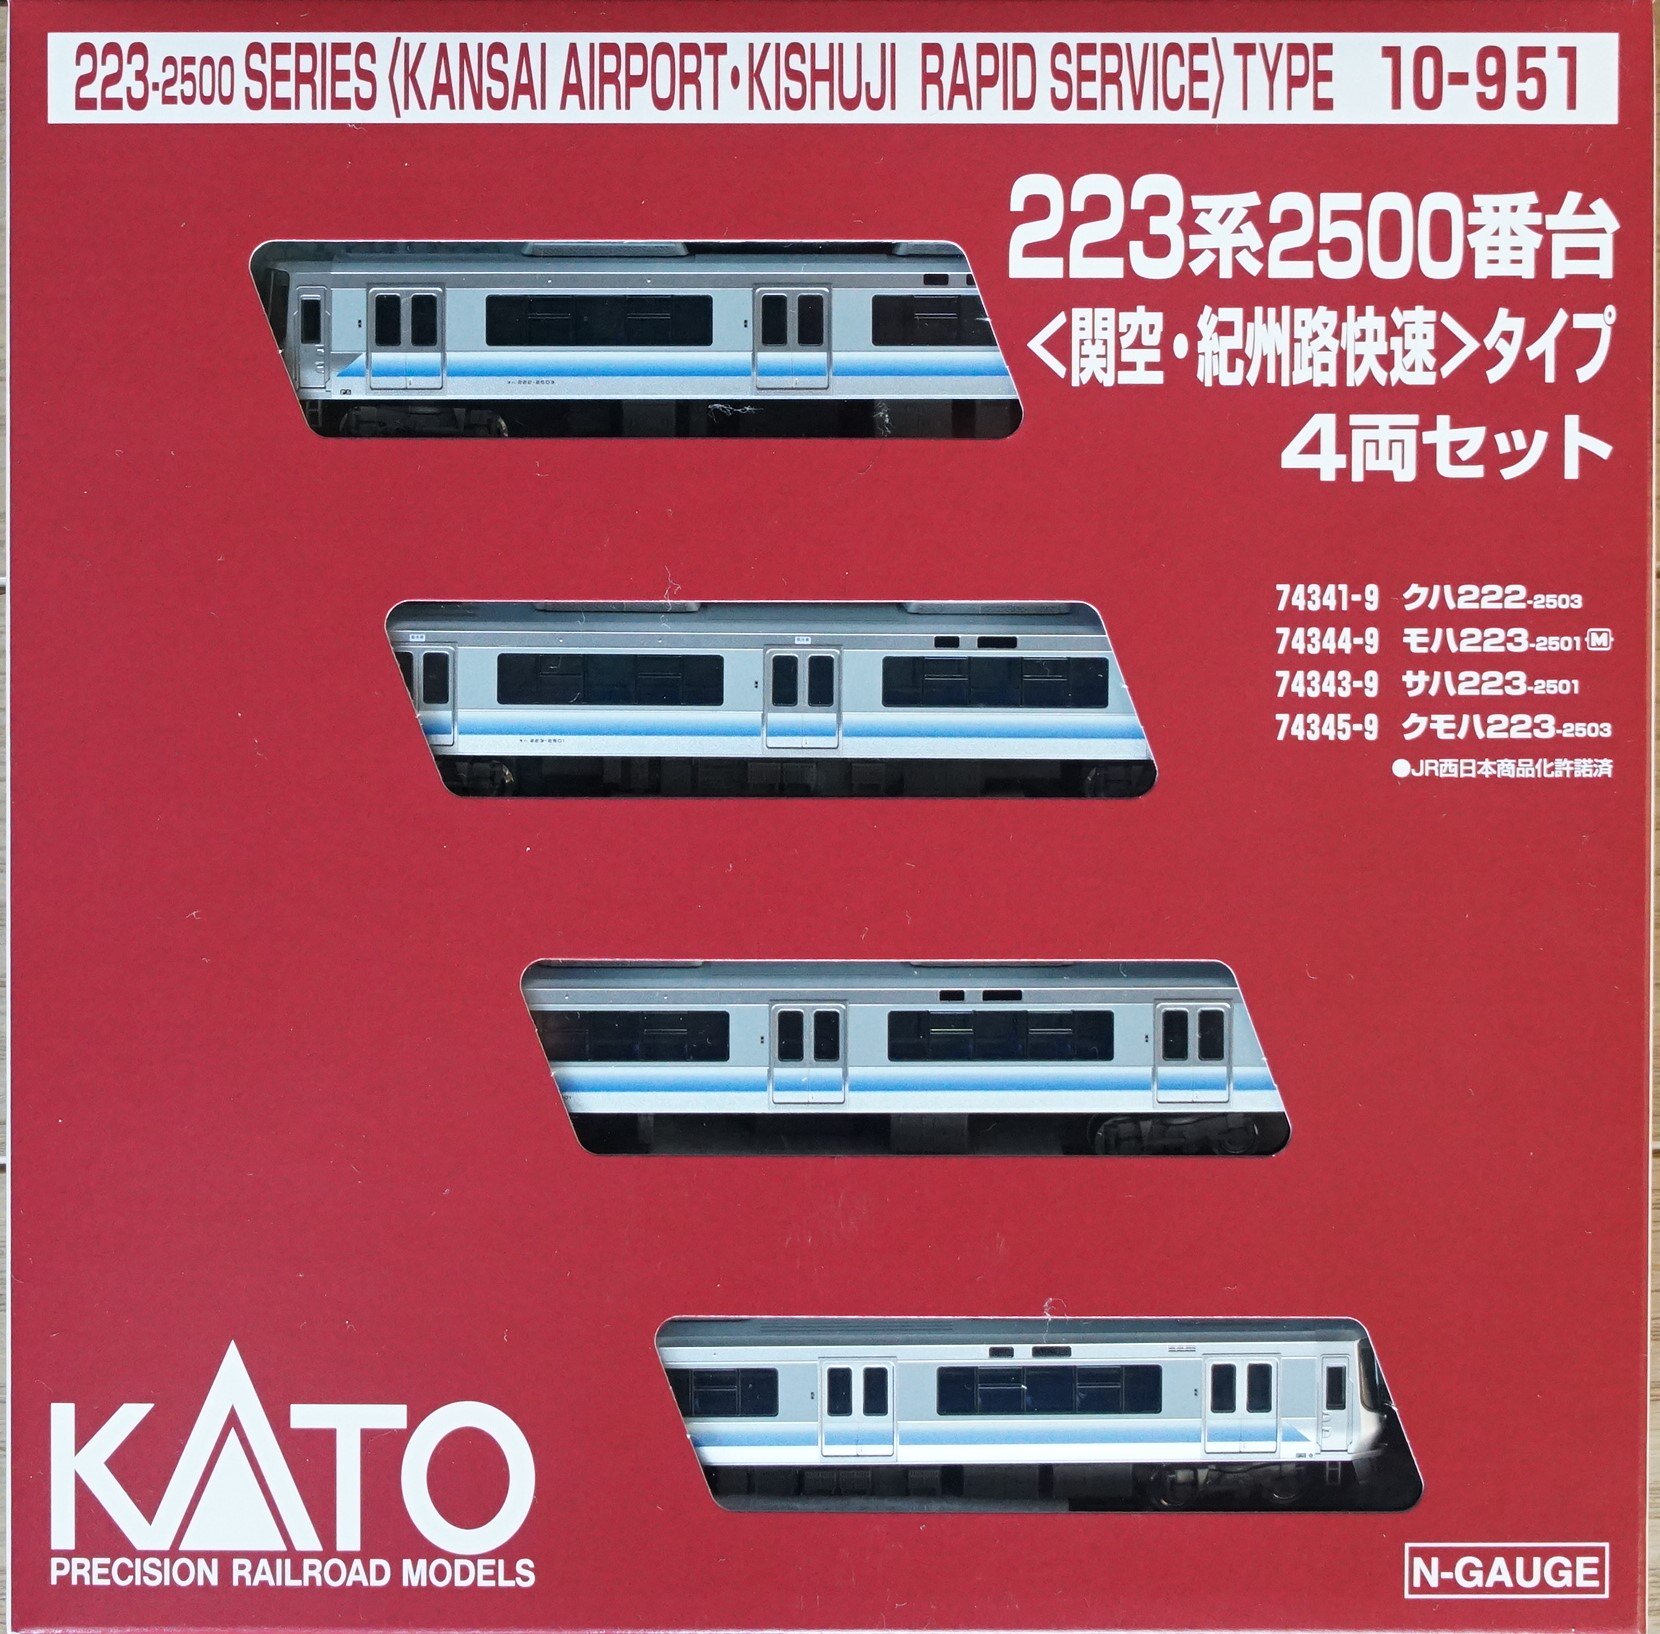 KATO 10-921 223系2500番台 関空紀州路快速 4両セット - 鉄道模型